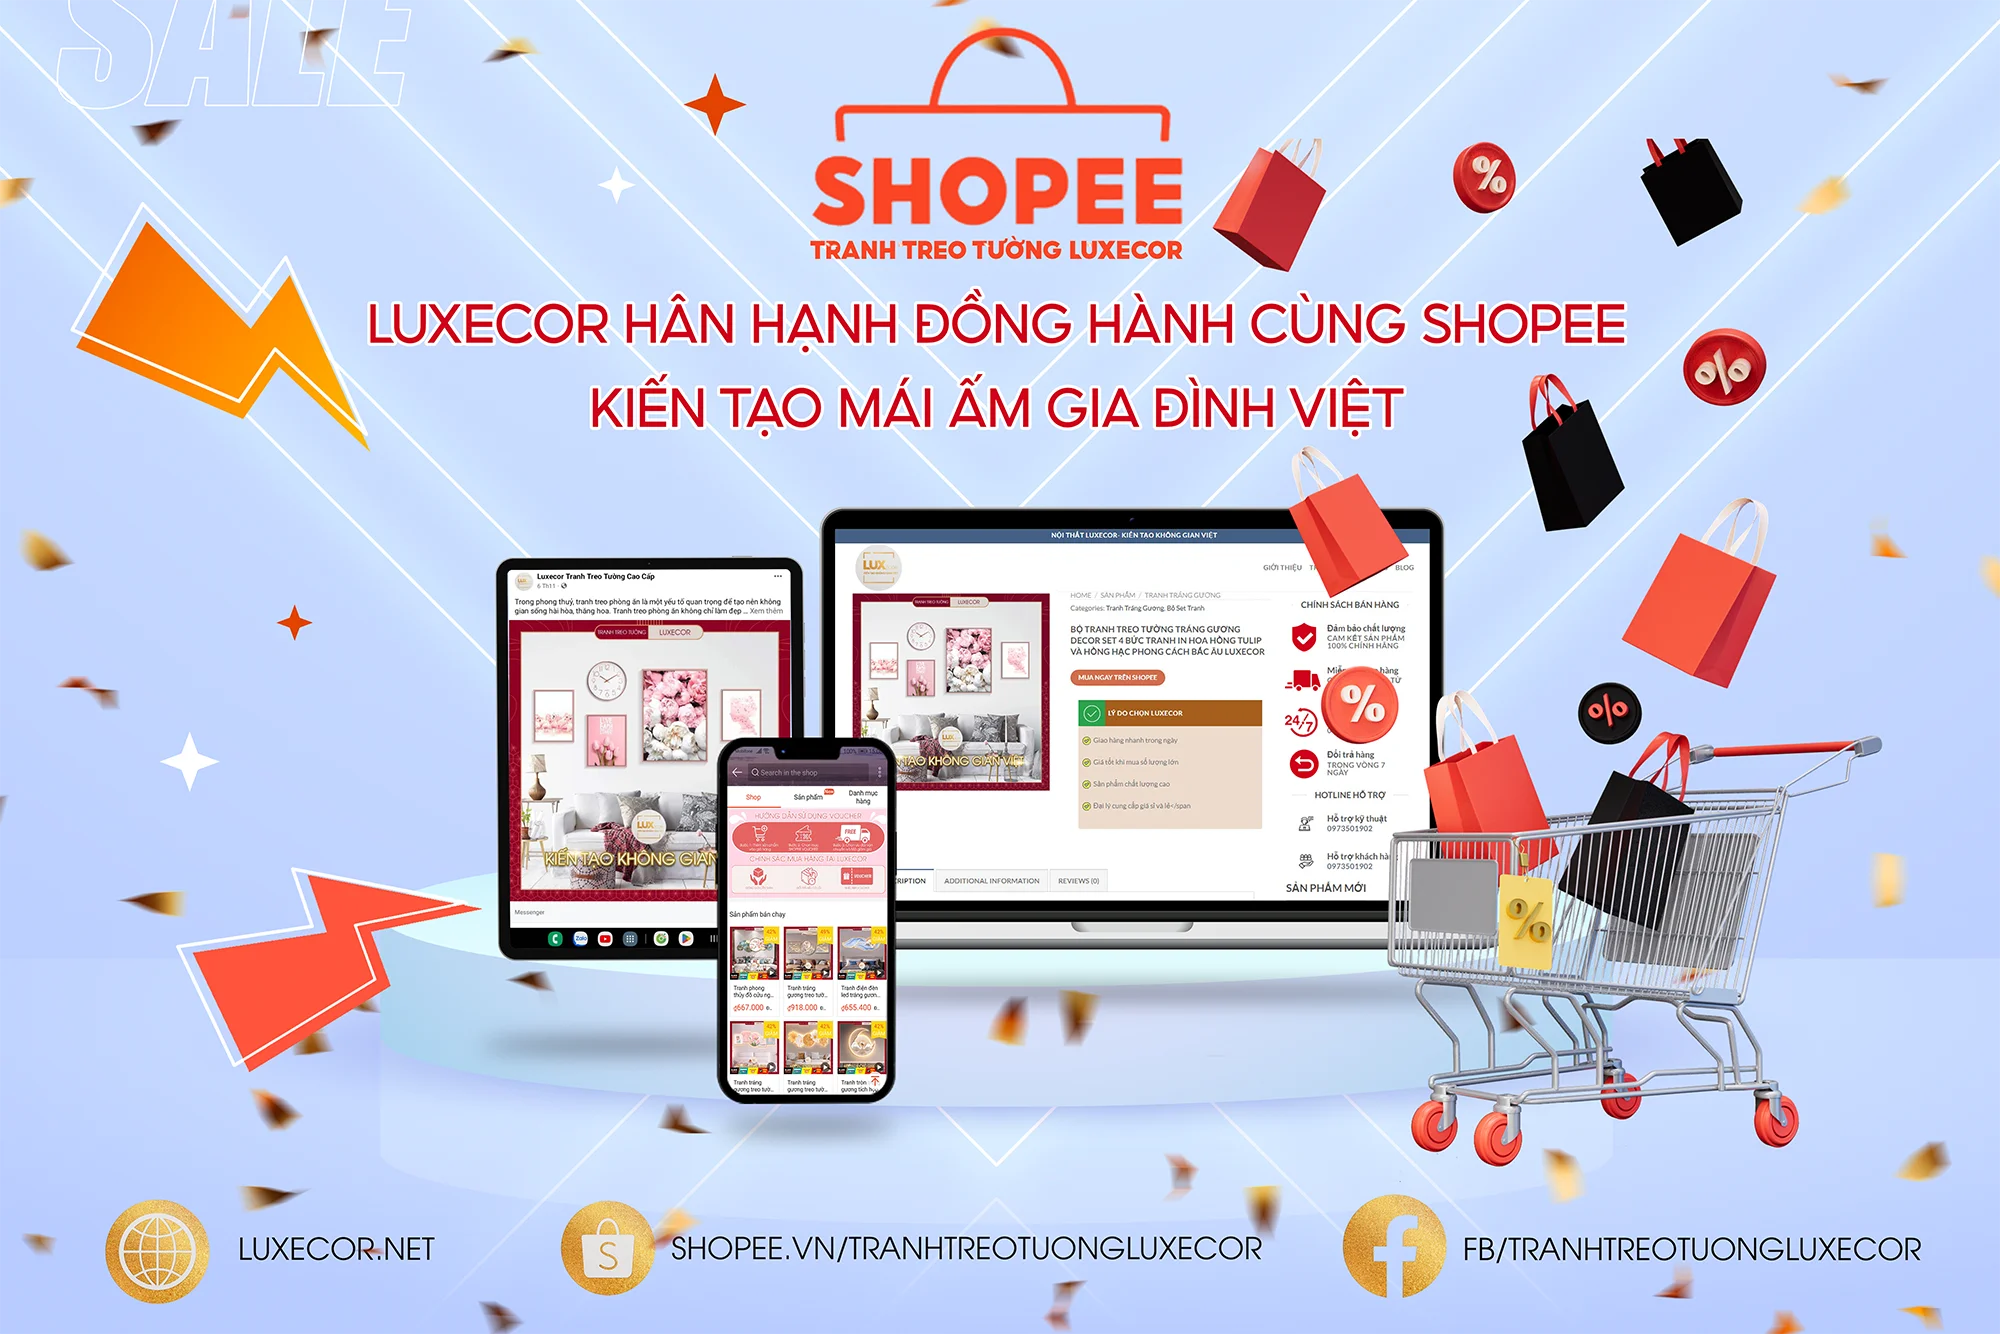 Tranh Treo Tường Luxecor hợp tác cùng Shopee kiến tạo mái ấm gia đình Việt